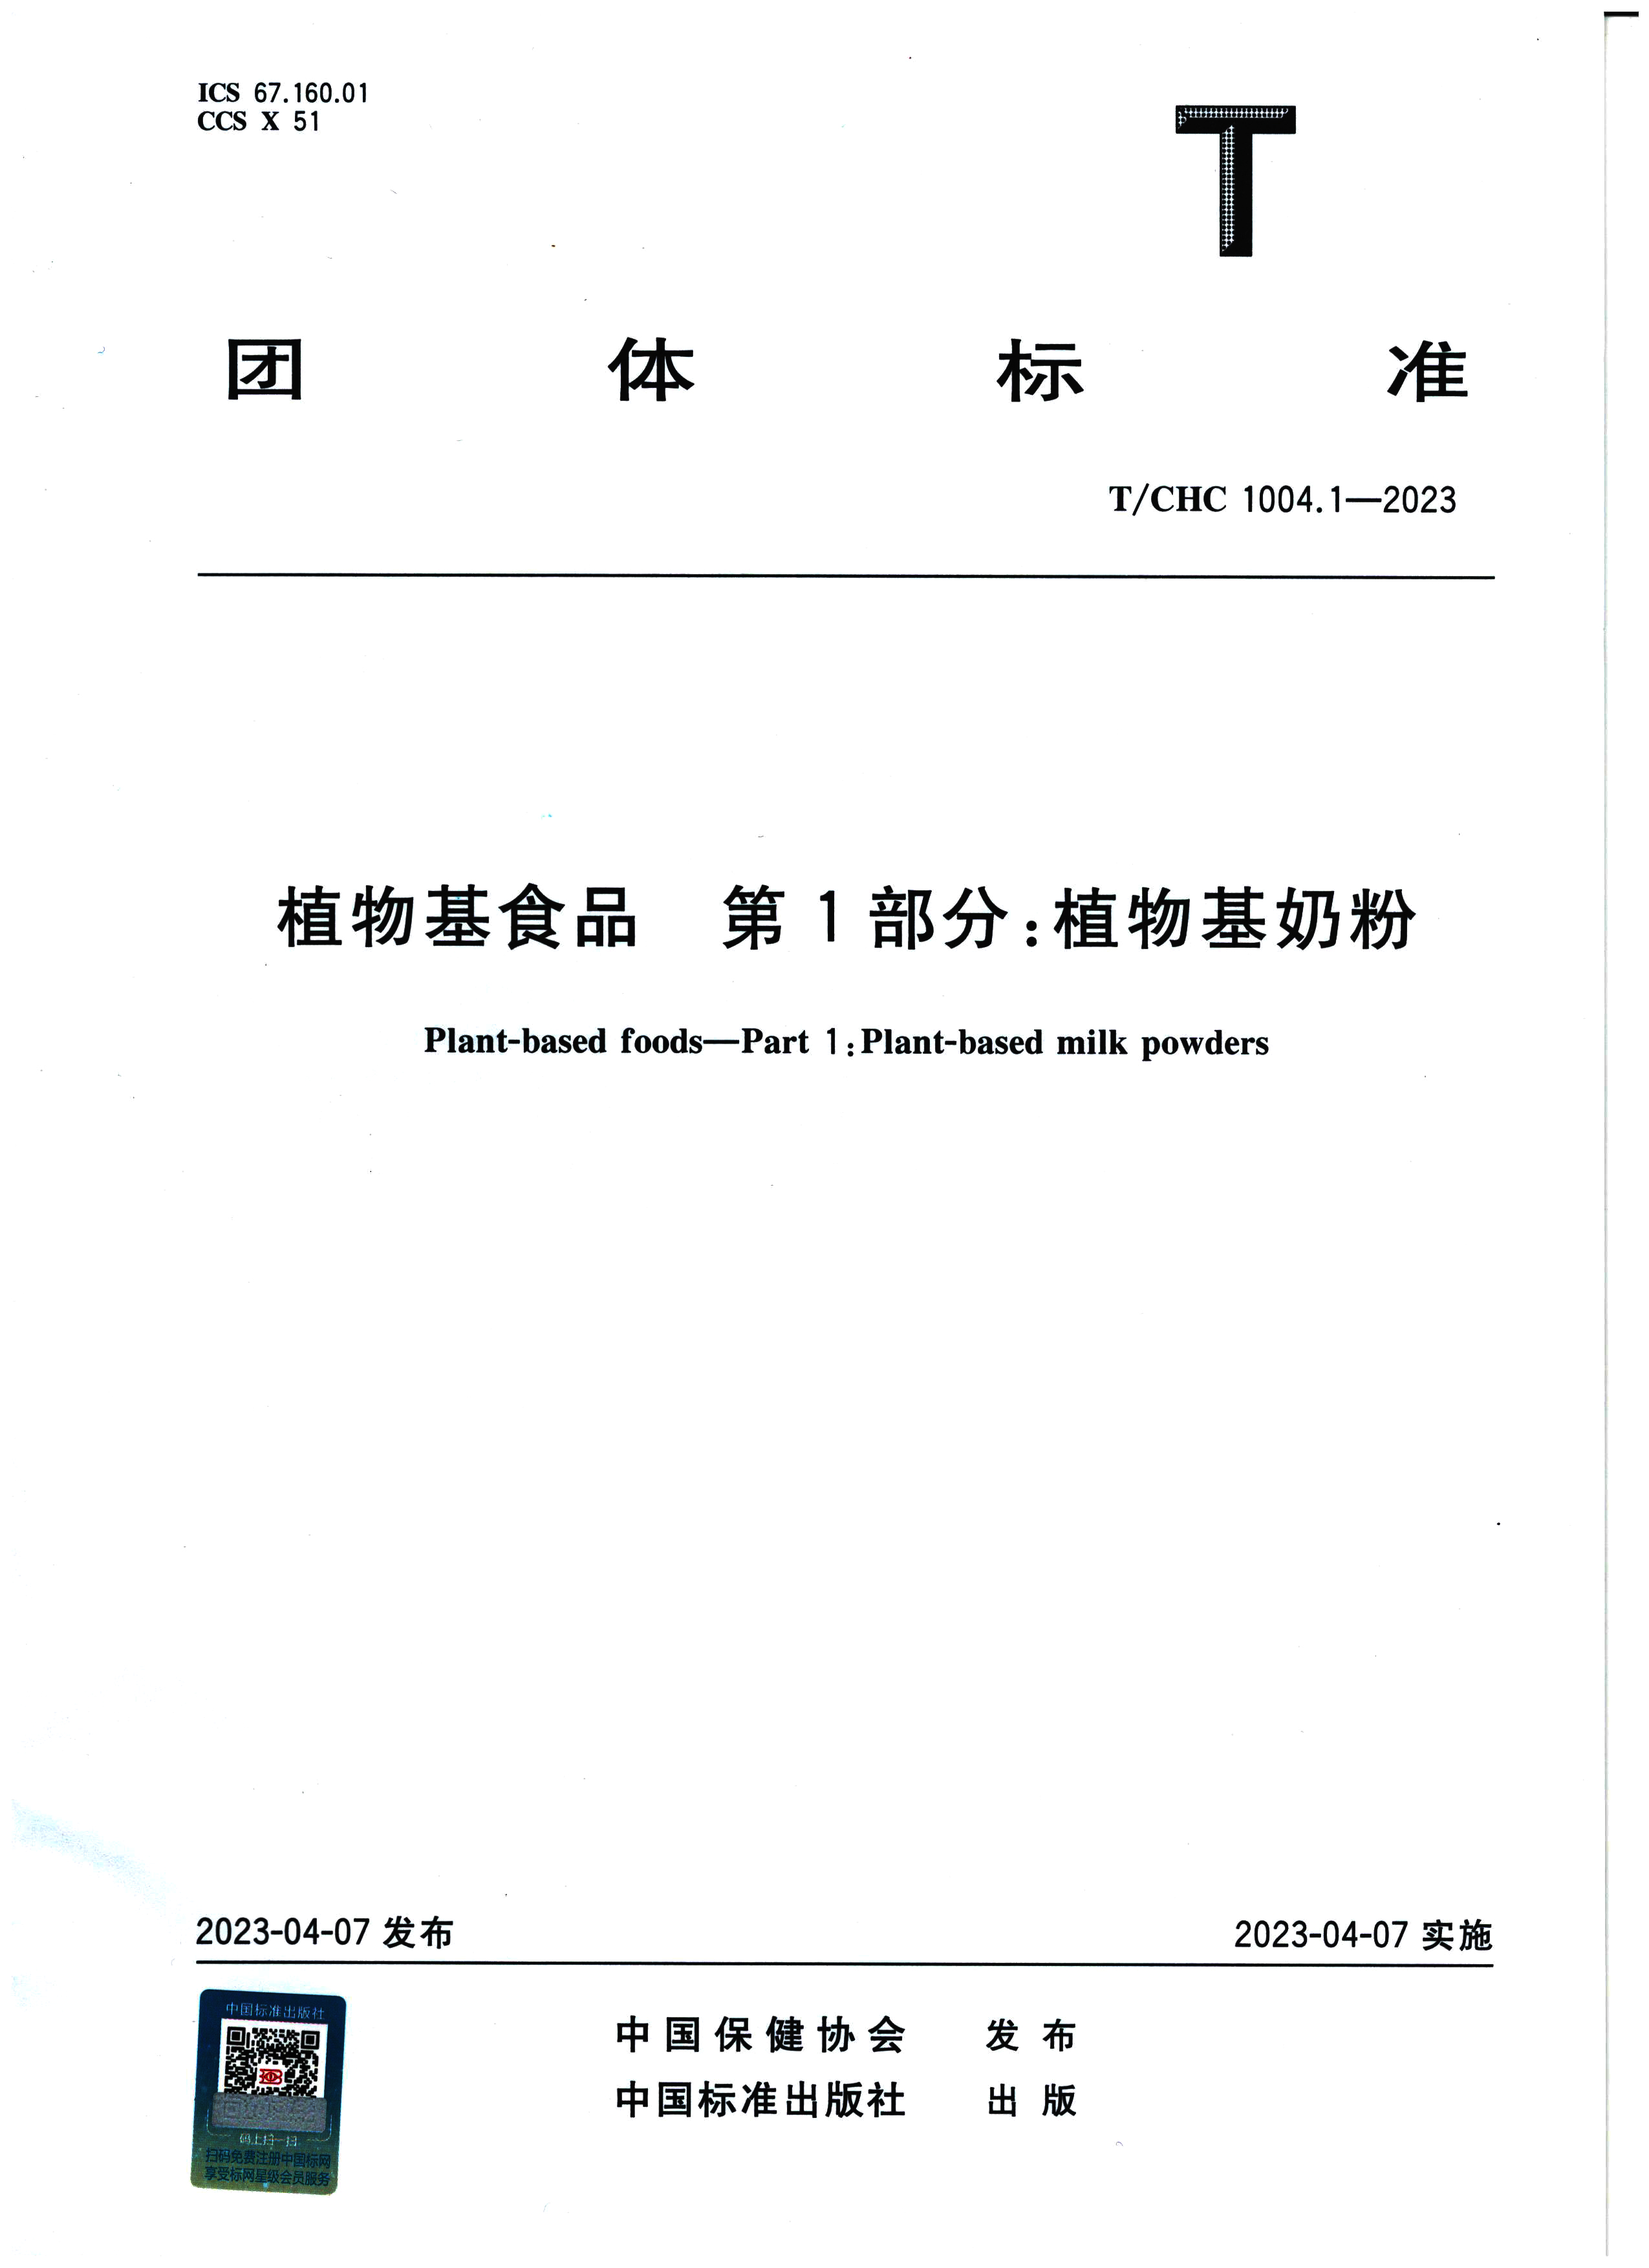 植物基食品（植物基奶粉）团体标准（中文版）(1)_页面_01.jpg